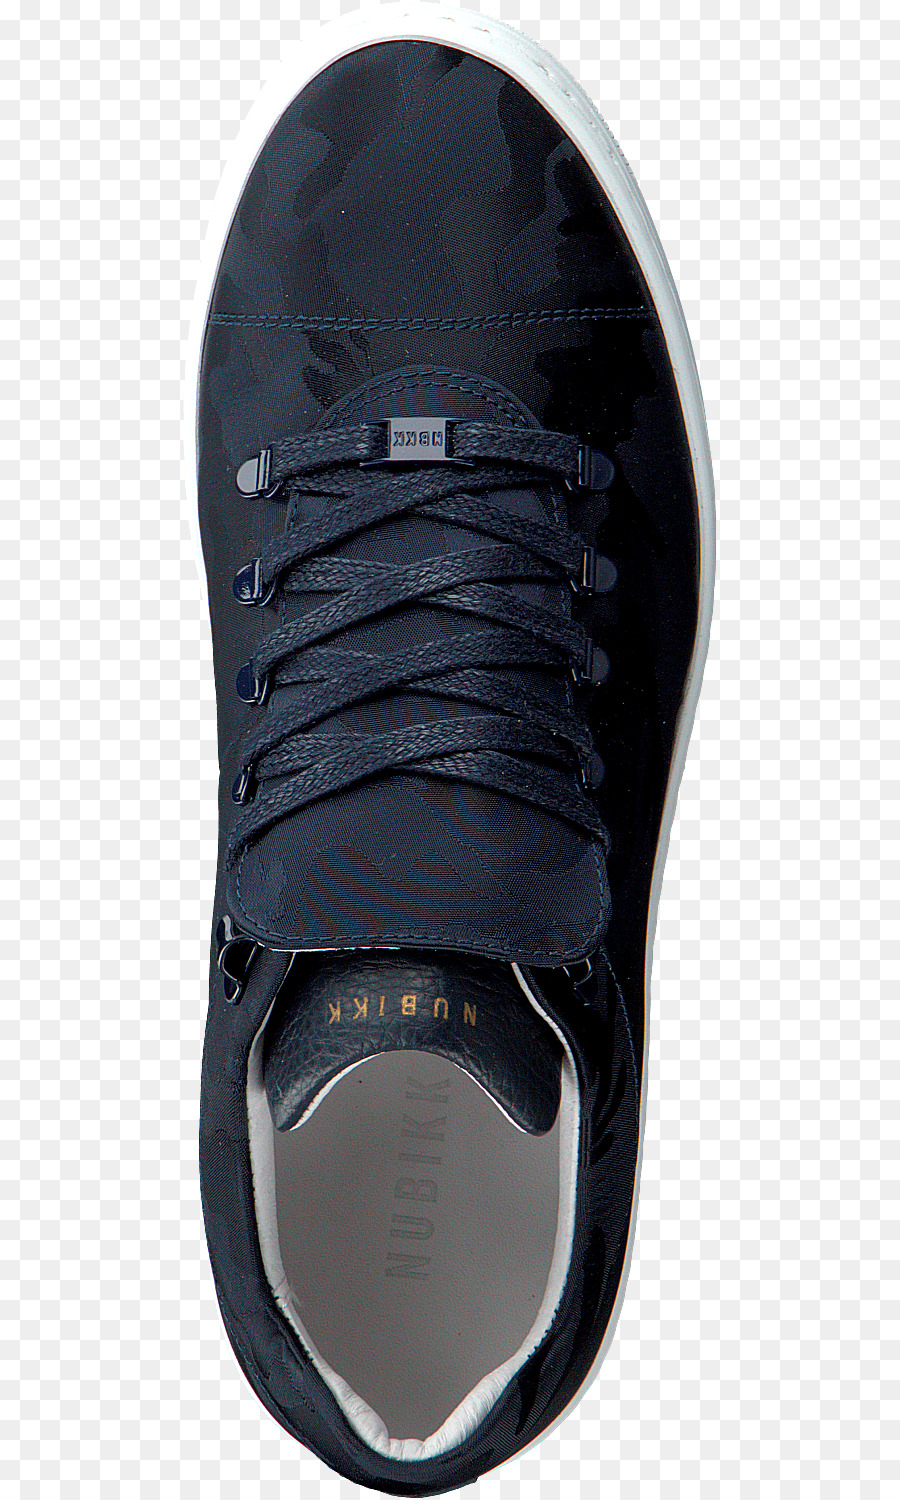 Scarpe sportive Blu Nubikk Yeye Camo Donkerblauw Sneaker Nike - ralph lauren scarpe rosse per le donne